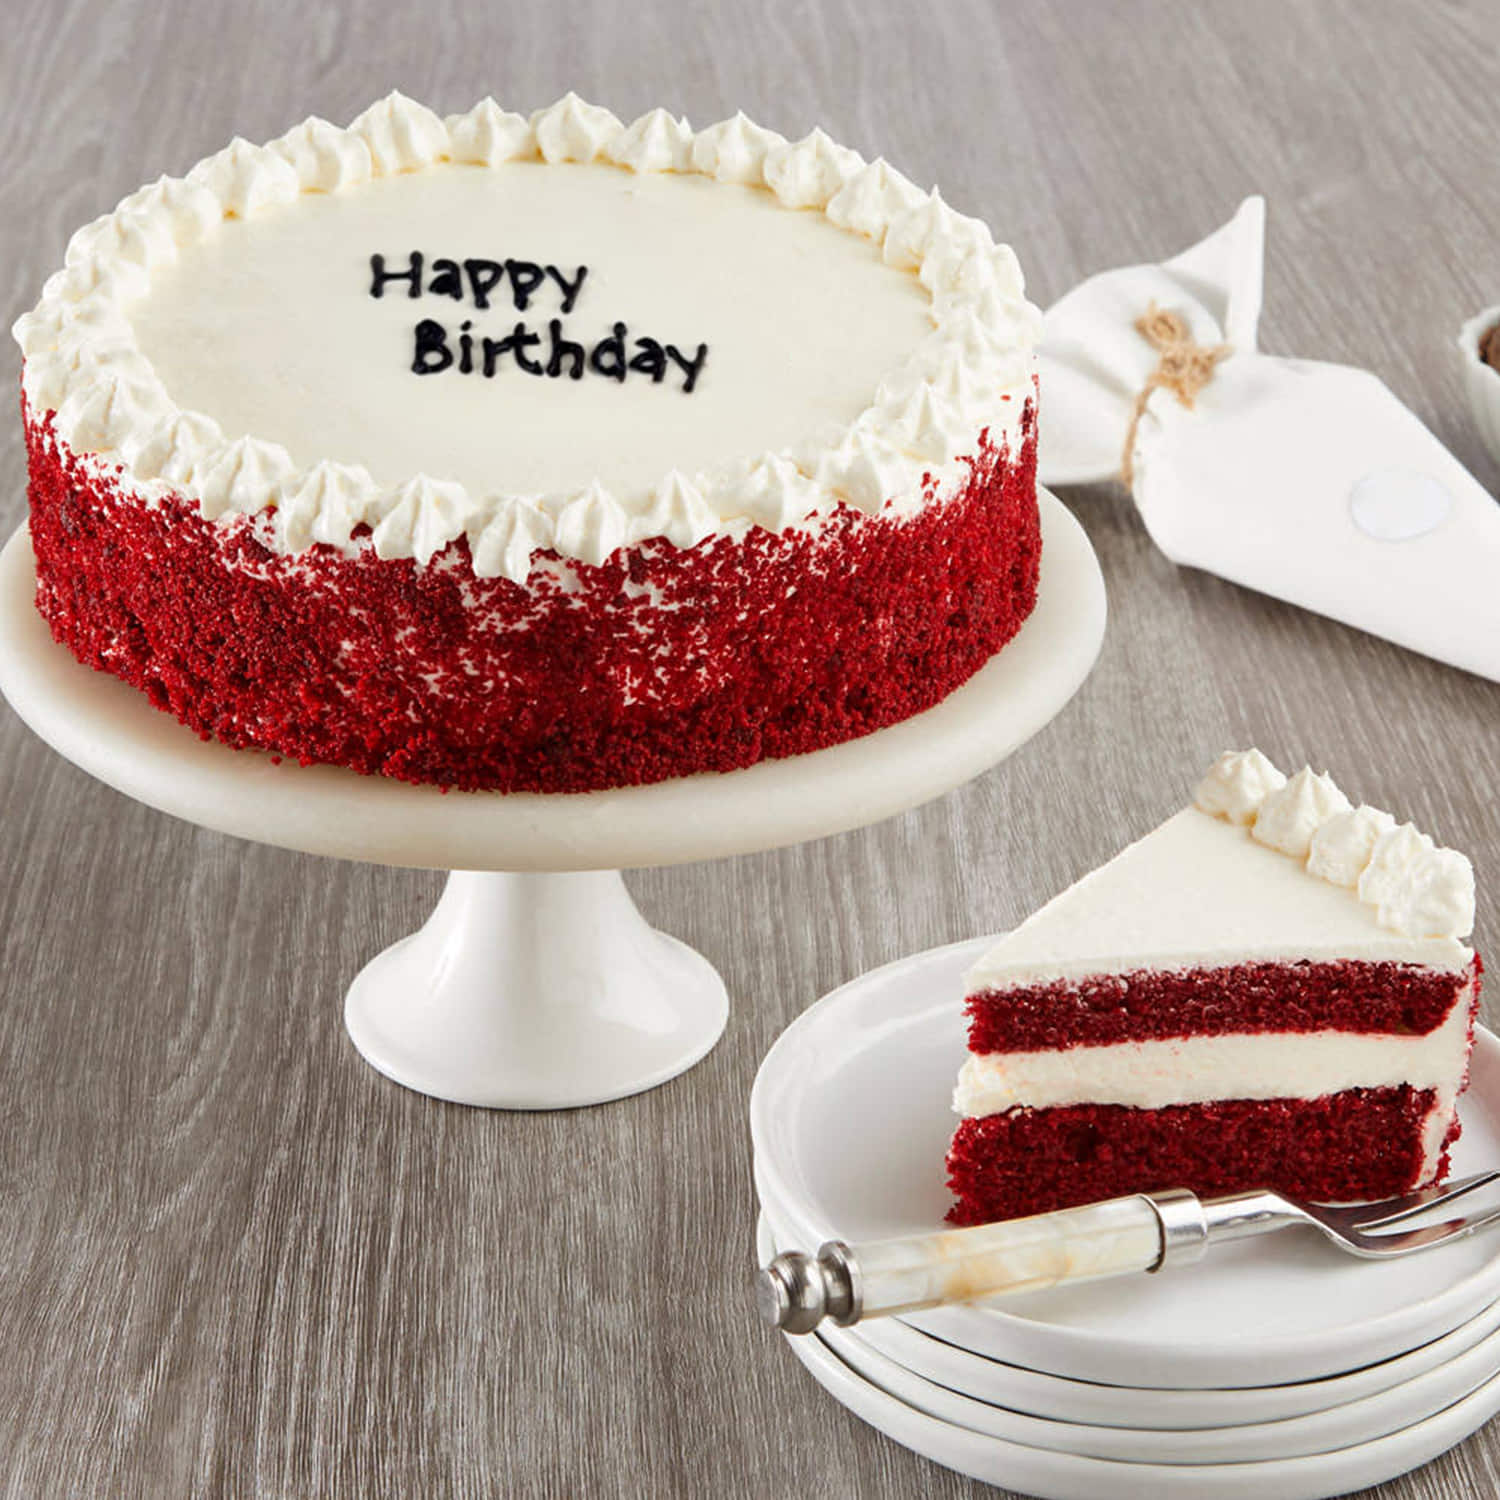 The Best Homemade Red Velvet Cake | Life Love & Sugar